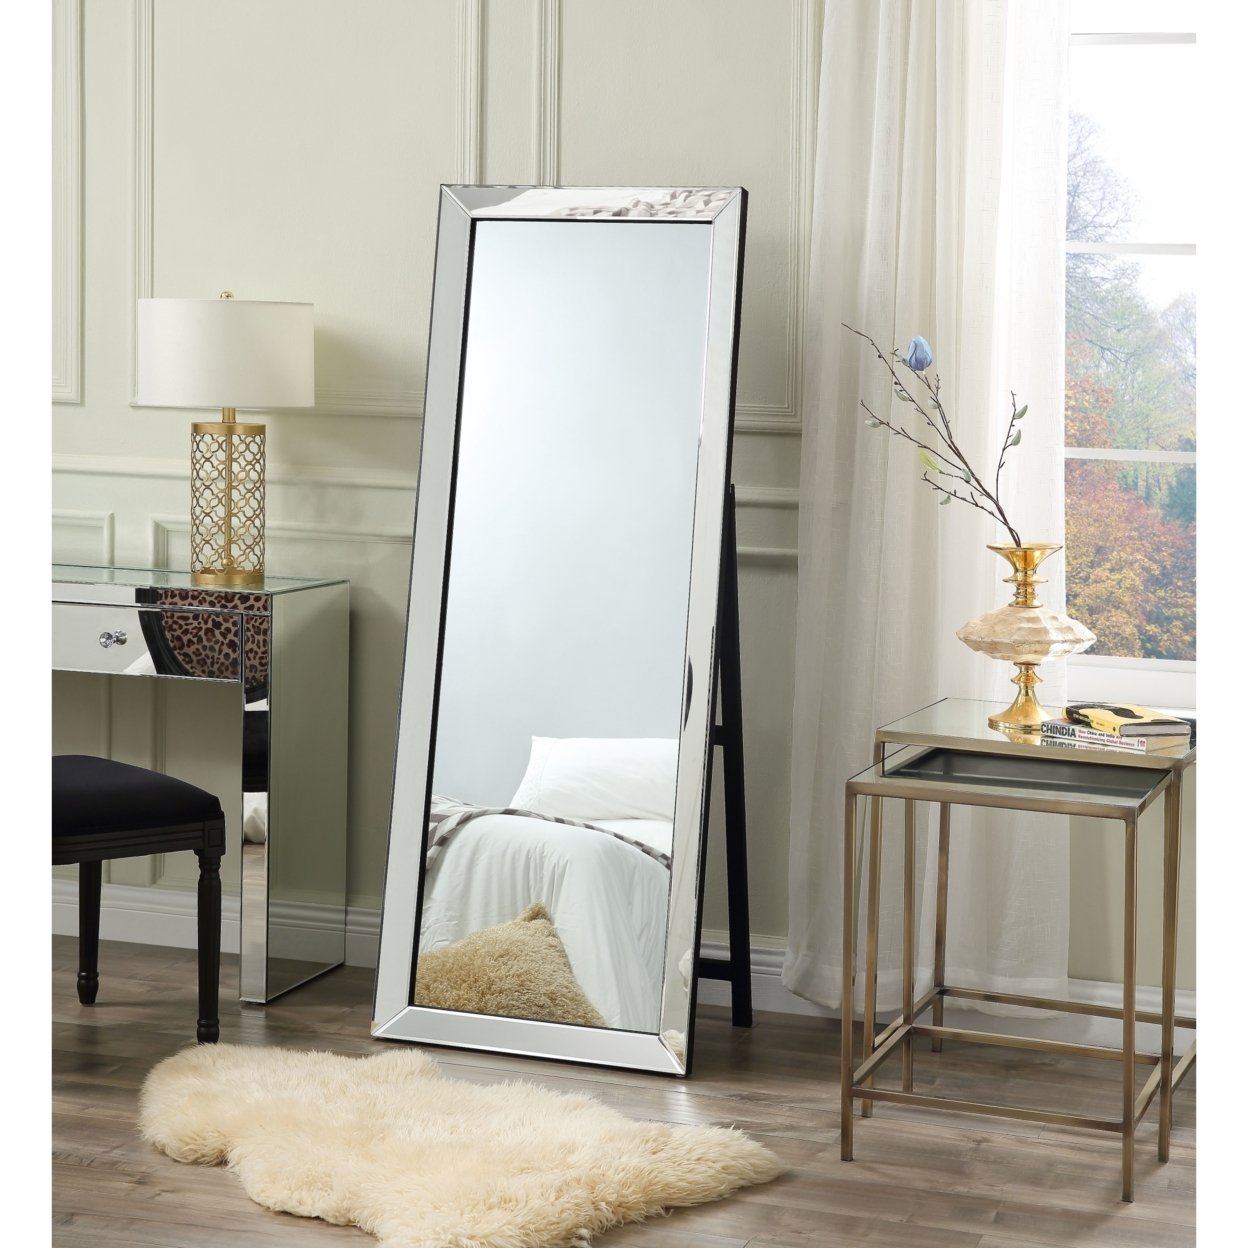 Kiara Full Length Mirror - Floor Standing Vanity Mirrored Frame Foldable Inspired Home